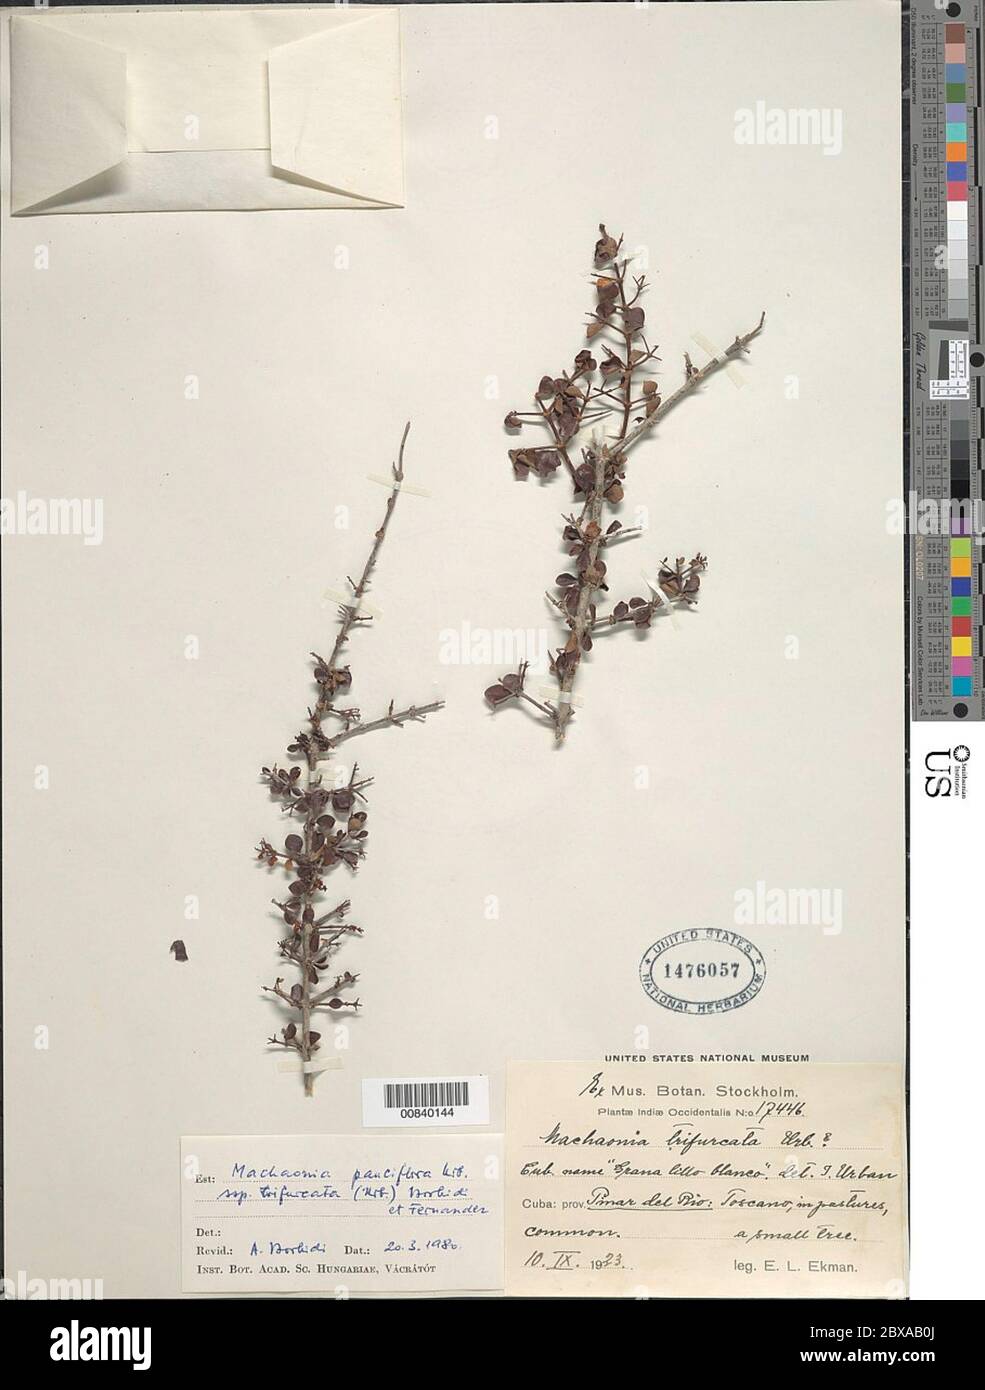 Machaonia pauciflora subsp trifurcata Borhidi Fernndez Machaonia pauciflora subsp trifurcata Borhidi Fernndez. Stock Photo